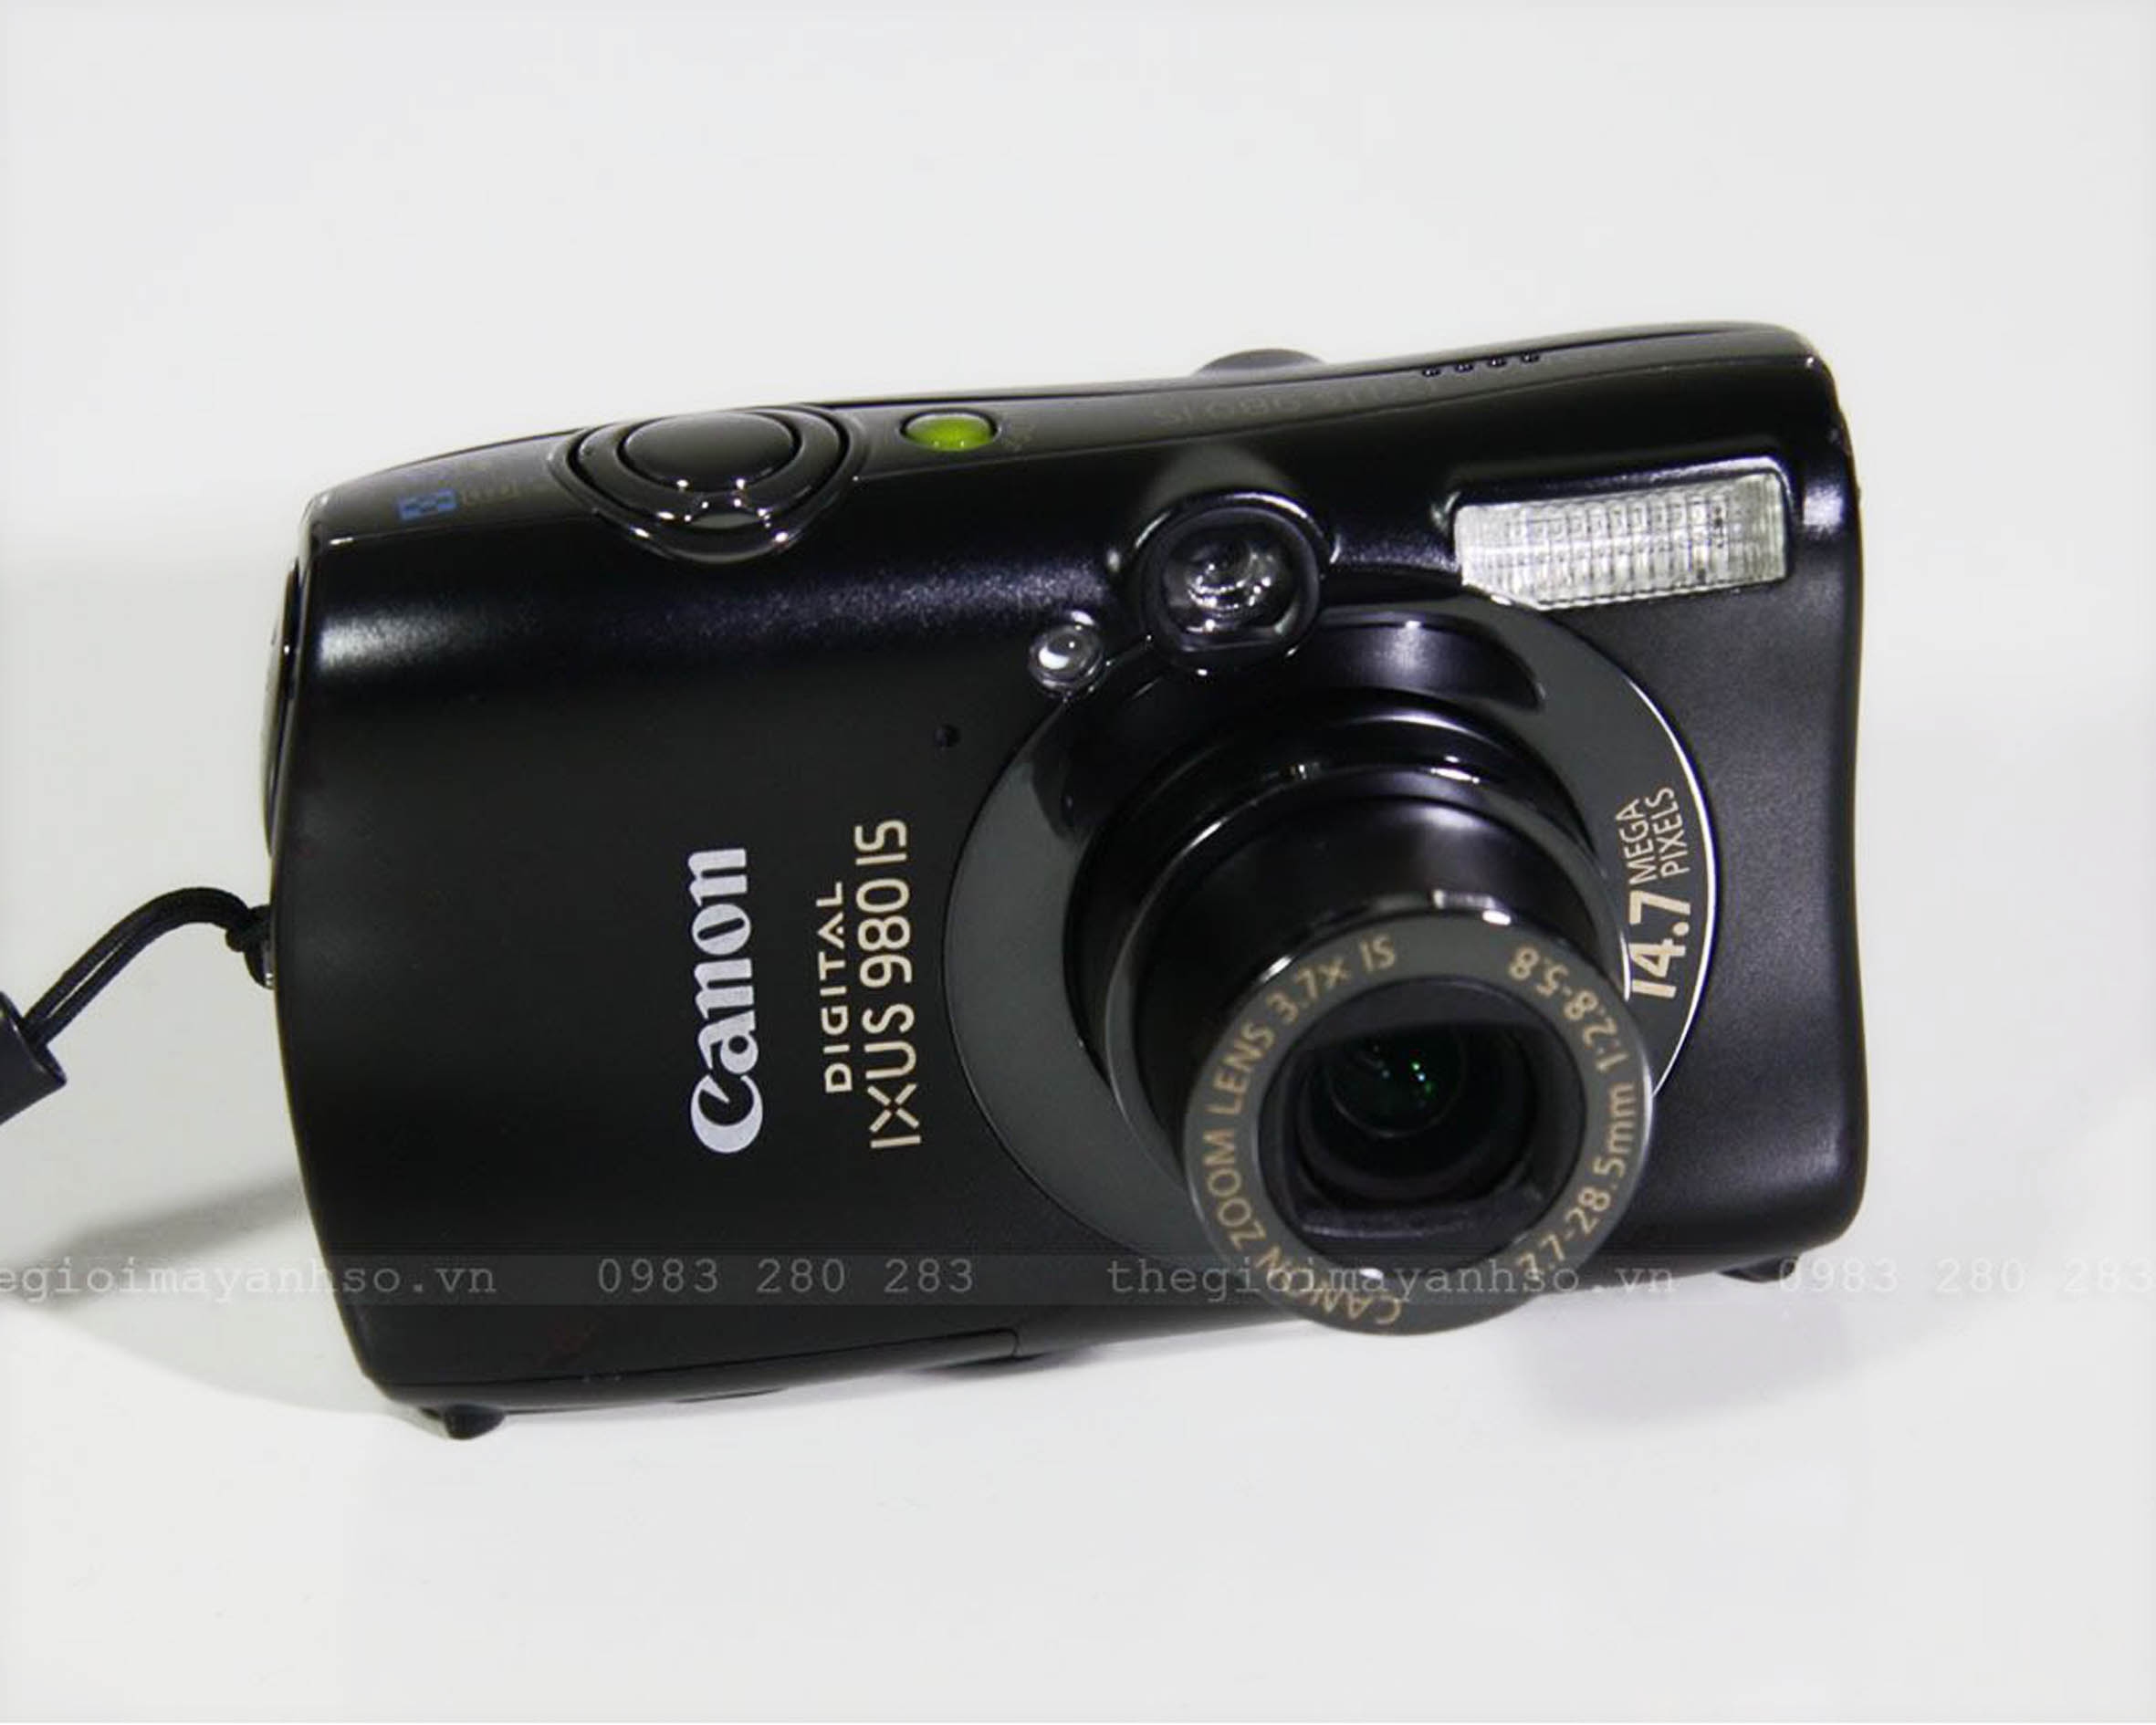 Canon IXUS980is / IXY3000is